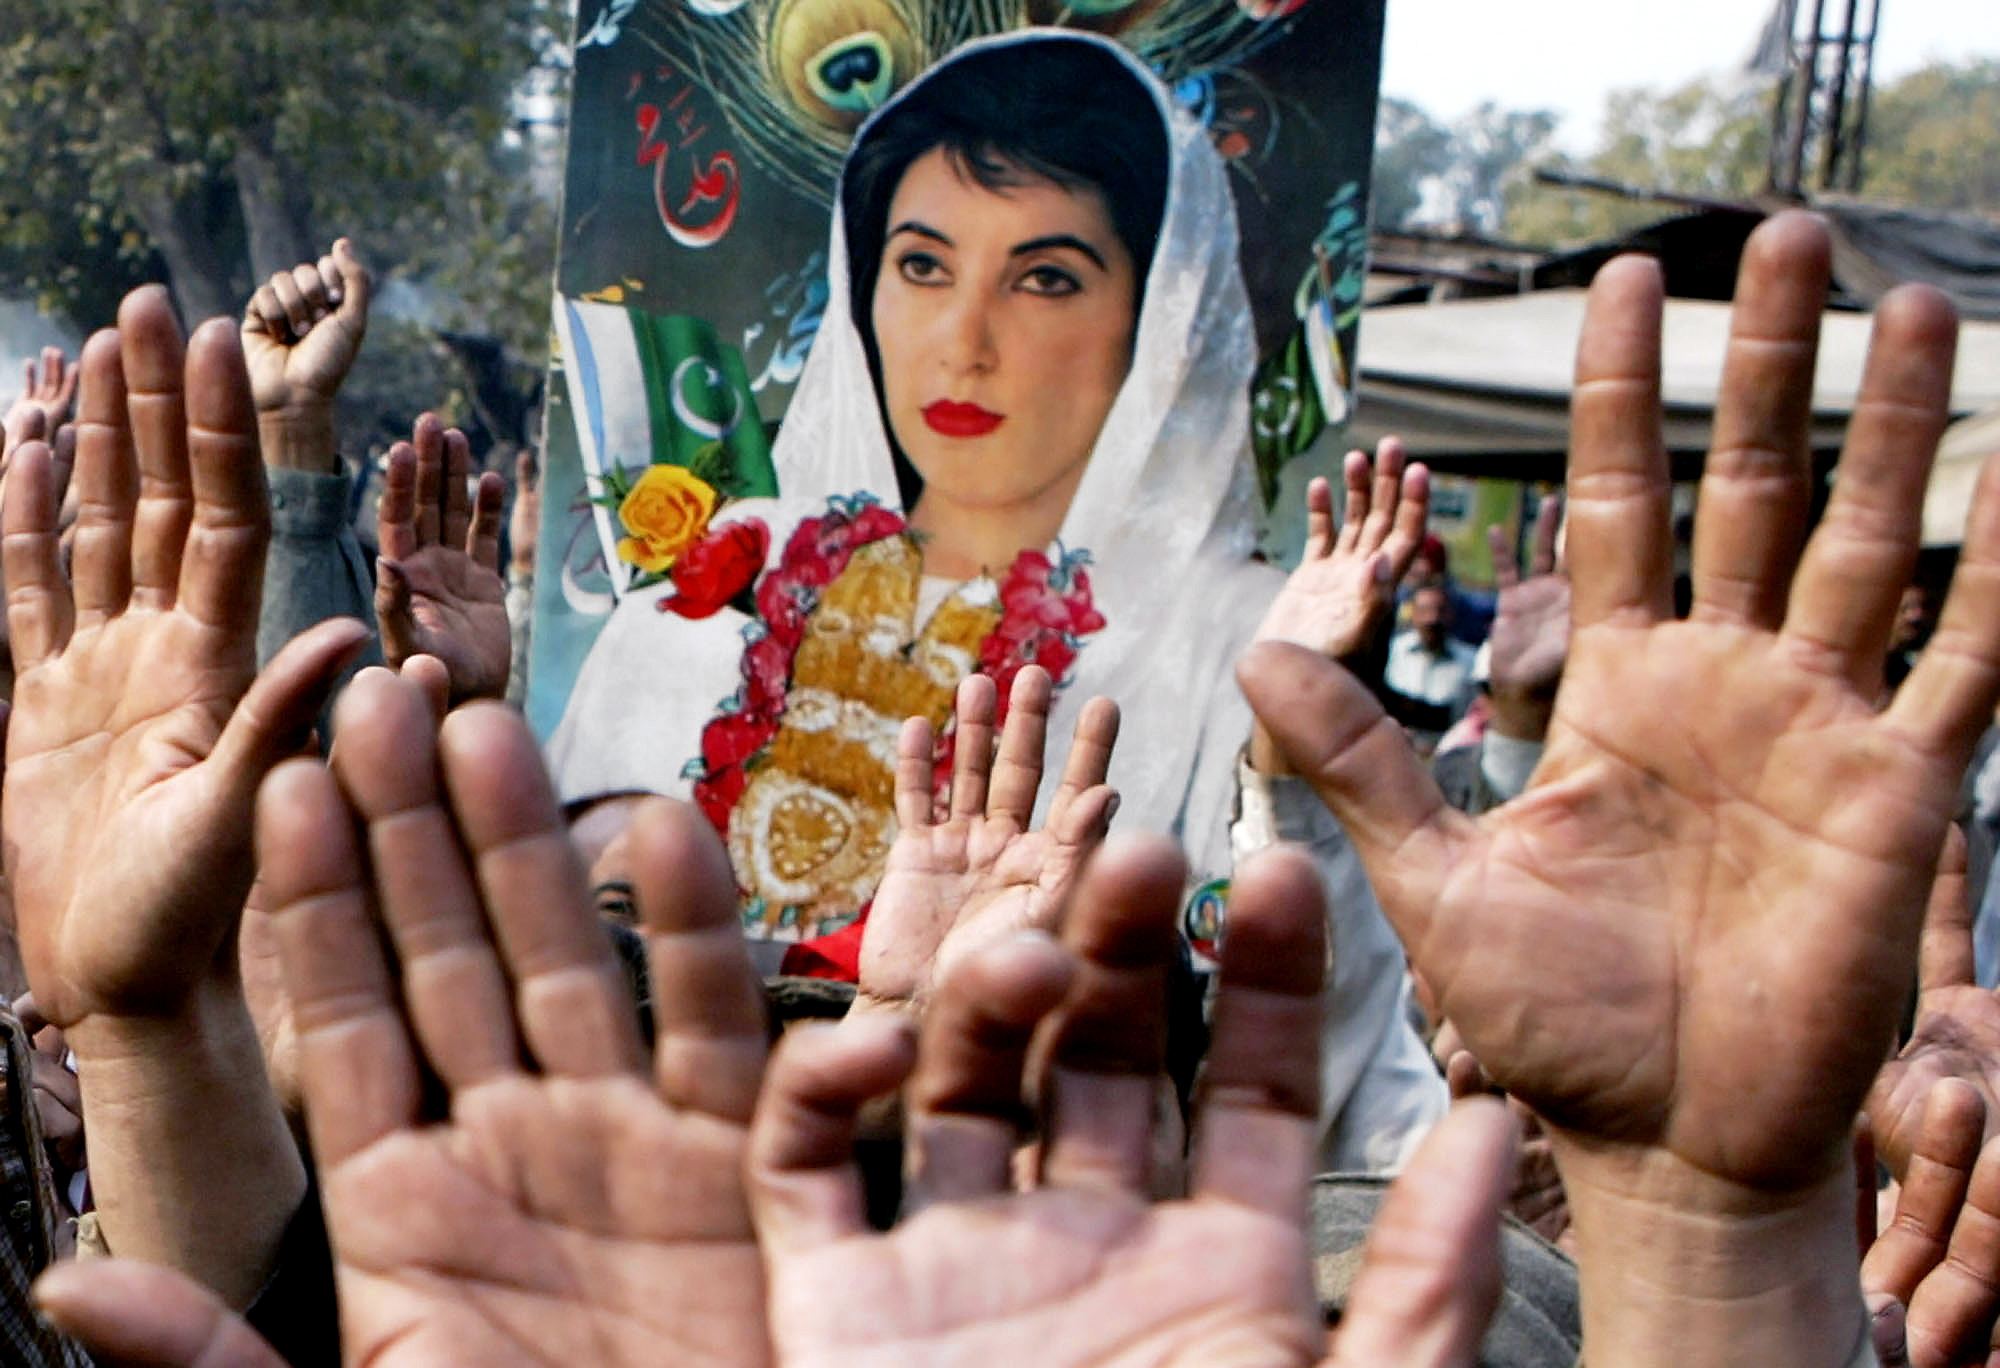 3 gennaio 2008: Sostenitori del Pakistan People's Party marciano con uno striscione della loro leader uccisa, Benazir Bhutto, durante una manifestazione a Lahore, giorni dopo la sua morte. (AP Images/K M Chaudary)'s Party march with a banner of their slain leader, Benazir Bhutto, during a rally in Lahore, days after her death. (AP Images/K M Chaudary)